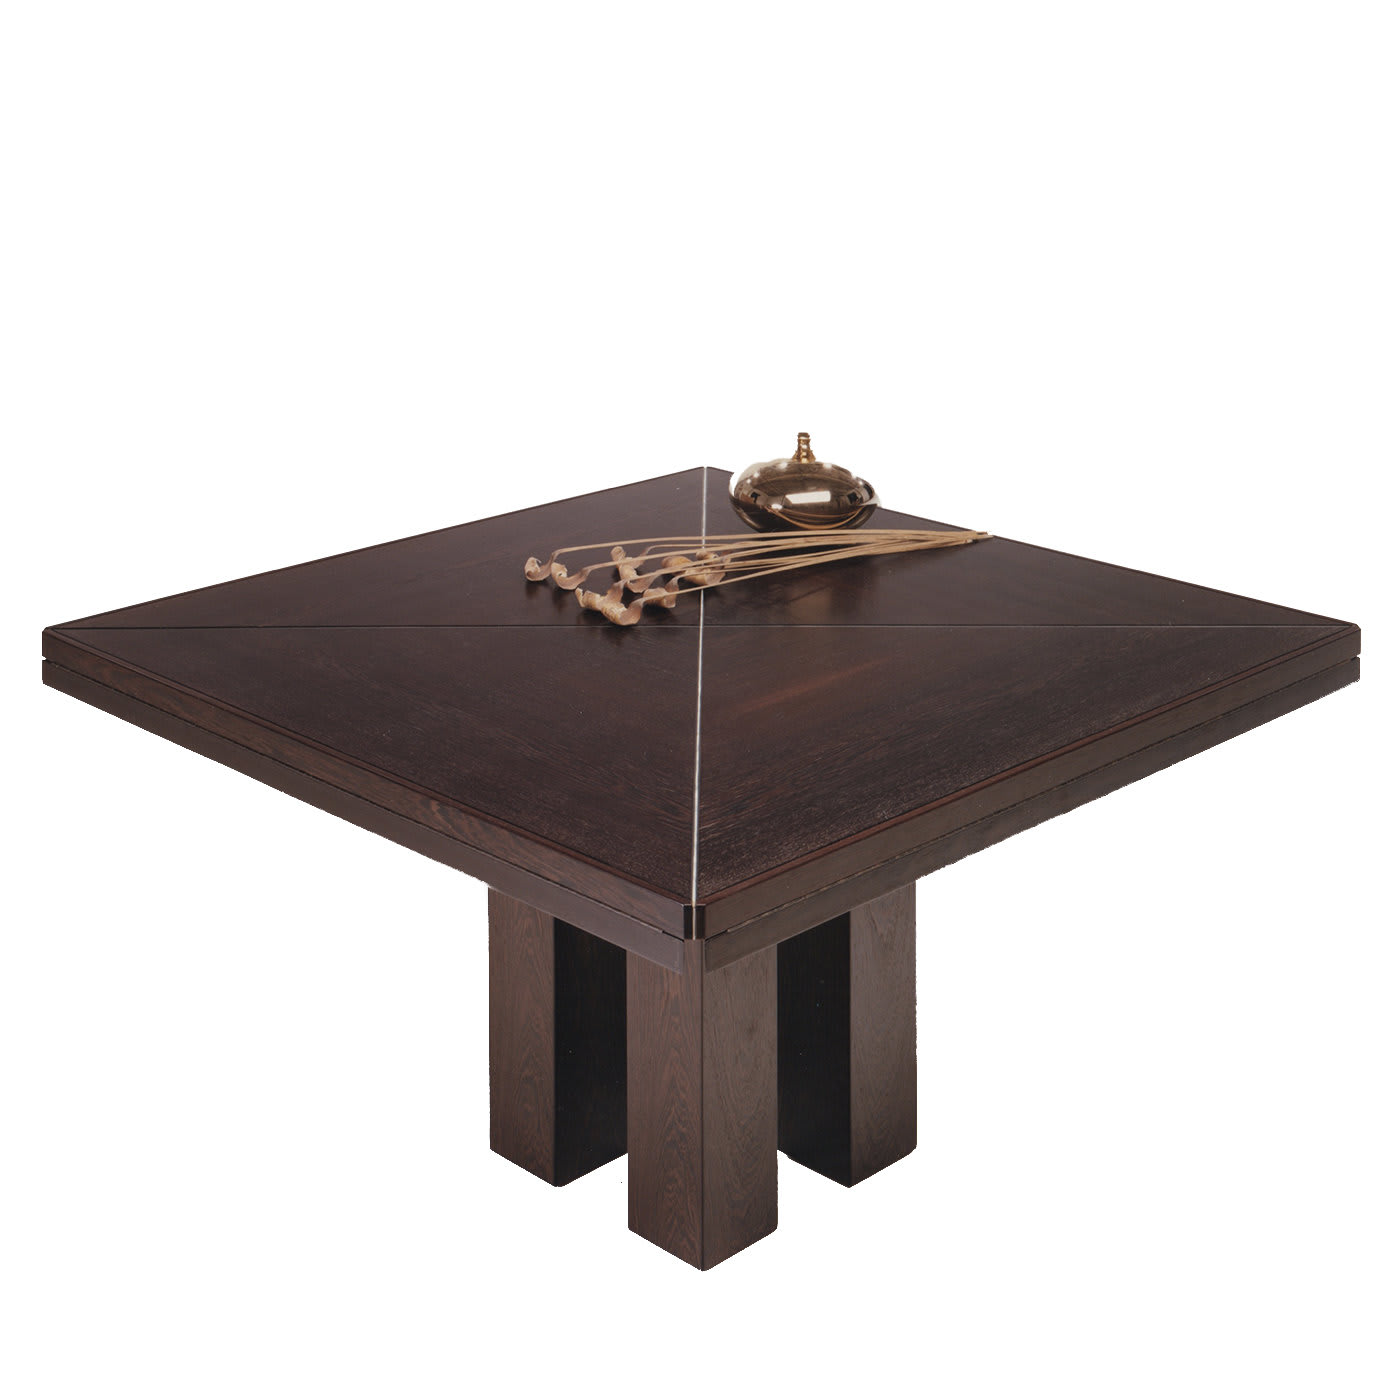 Micene Table by Ferdinando Meccani - Meccani Design